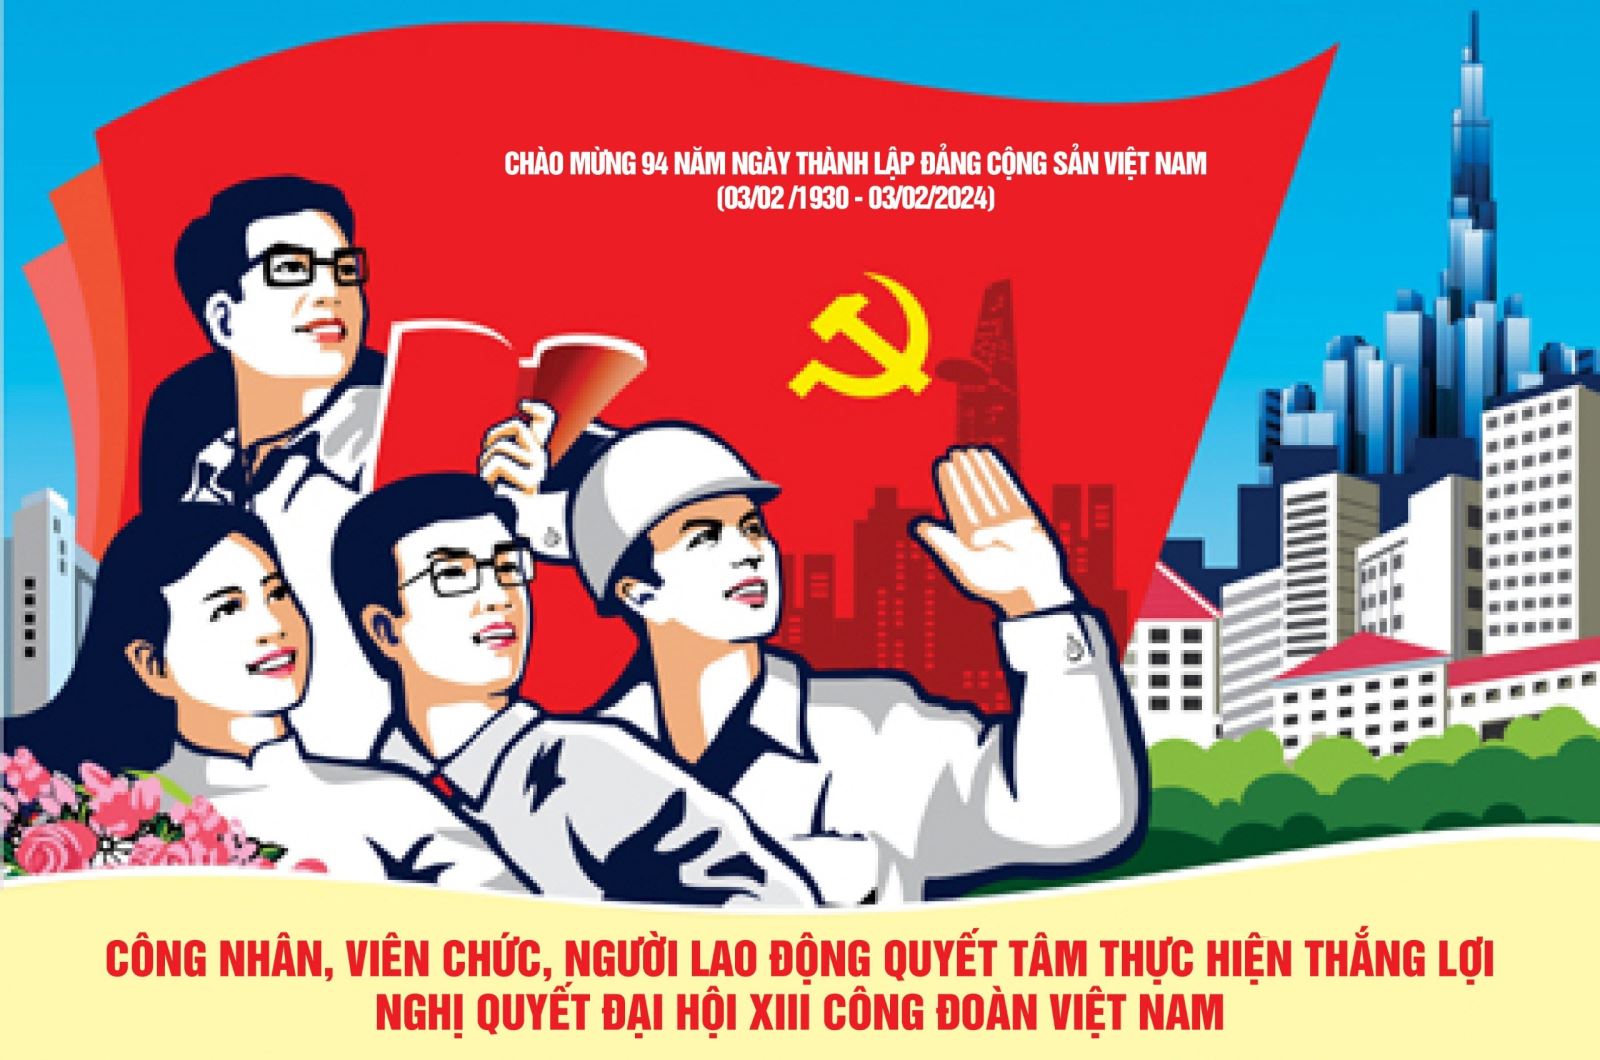 Chào mừng 94 năm ngày thành lập Đảng Cộng sản Việt Nam (03/02/1930-03/02/2024)